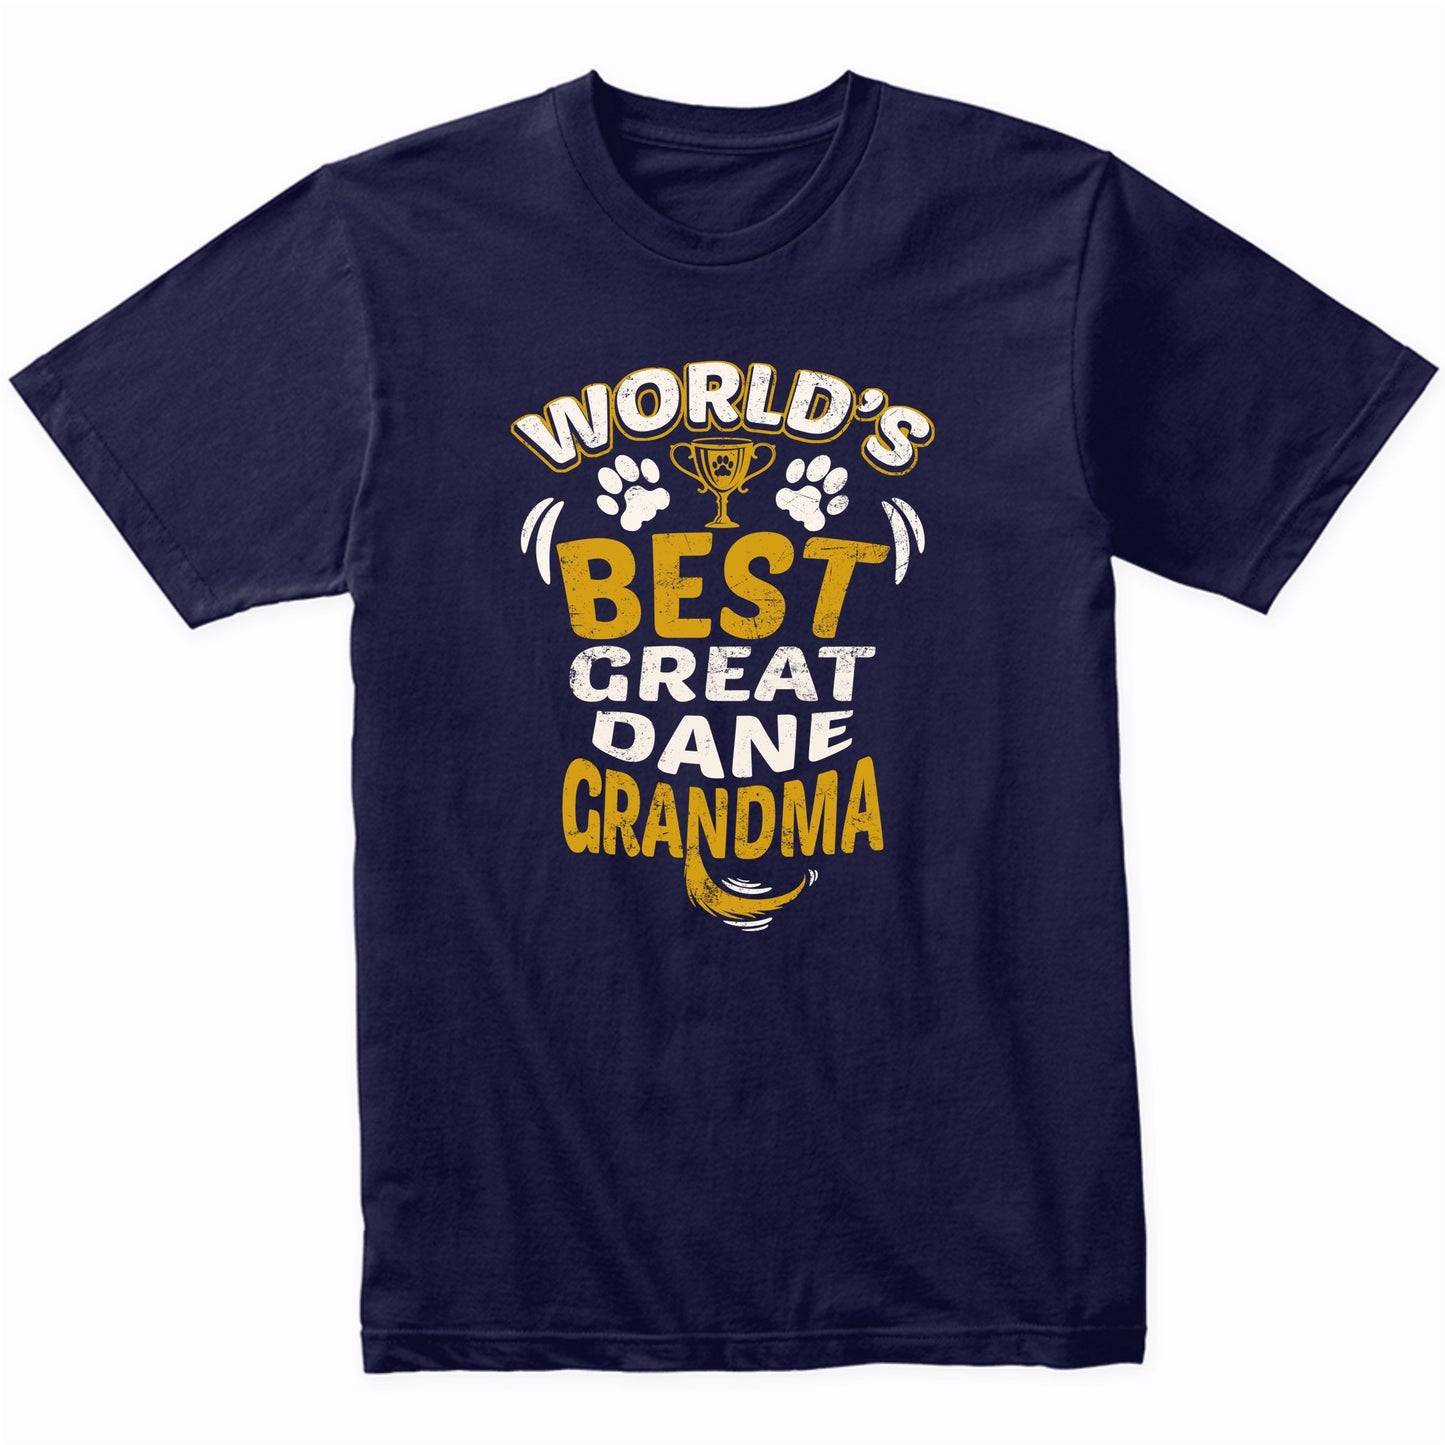 World's Best Great Dane Grandma Graphic T-Shirt